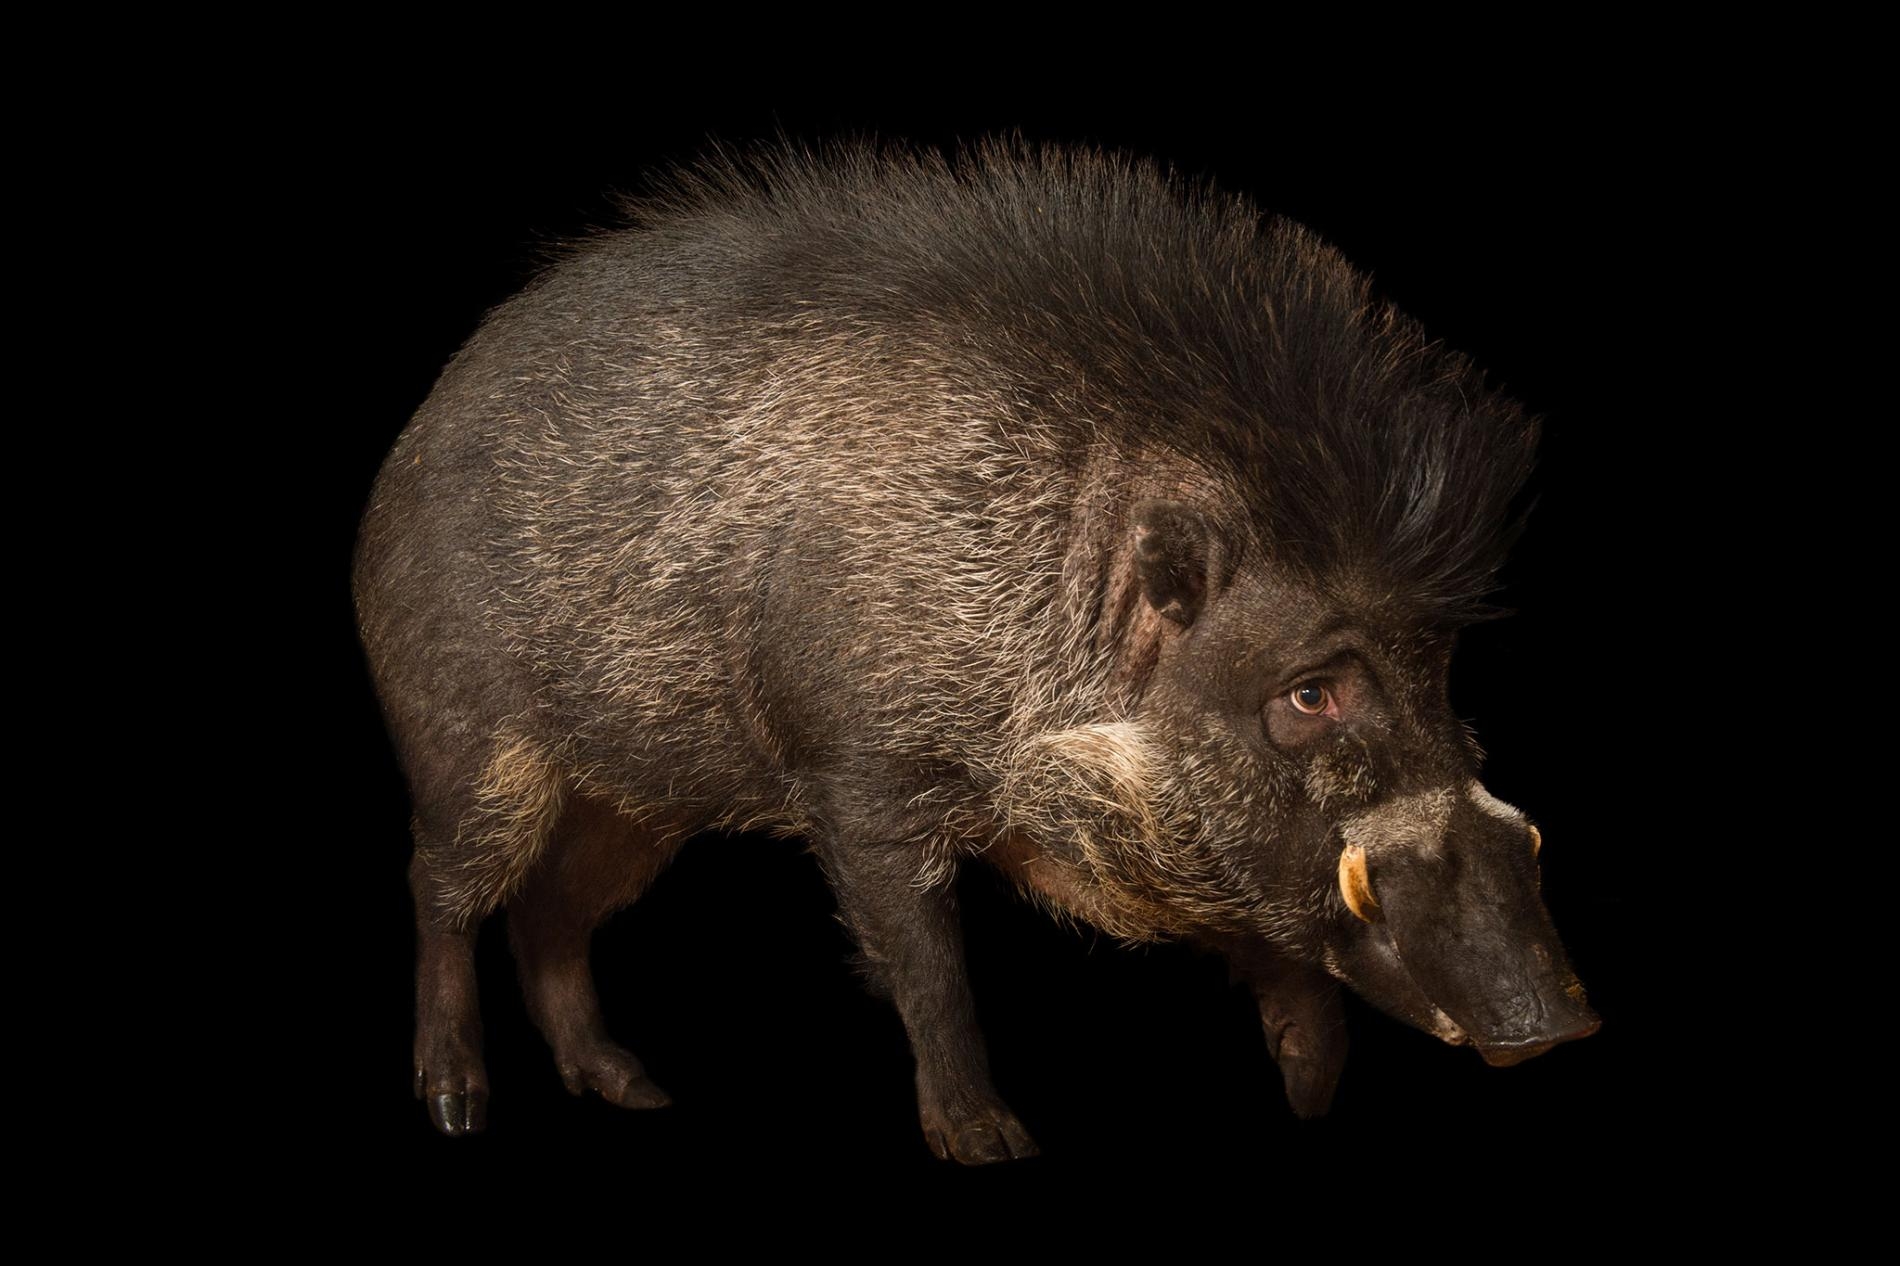 目前養在圈養環境中的捲毛野豬（Sus cebifrons, 圖為明尼蘇達動物園的捲毛野豬）大約只有300頭。牠們在野外的族群狀況不明。PHOTOGRAPH BY JOEL SARTORE, NATIONAL GEOGRAPHIC PHOTO ARK